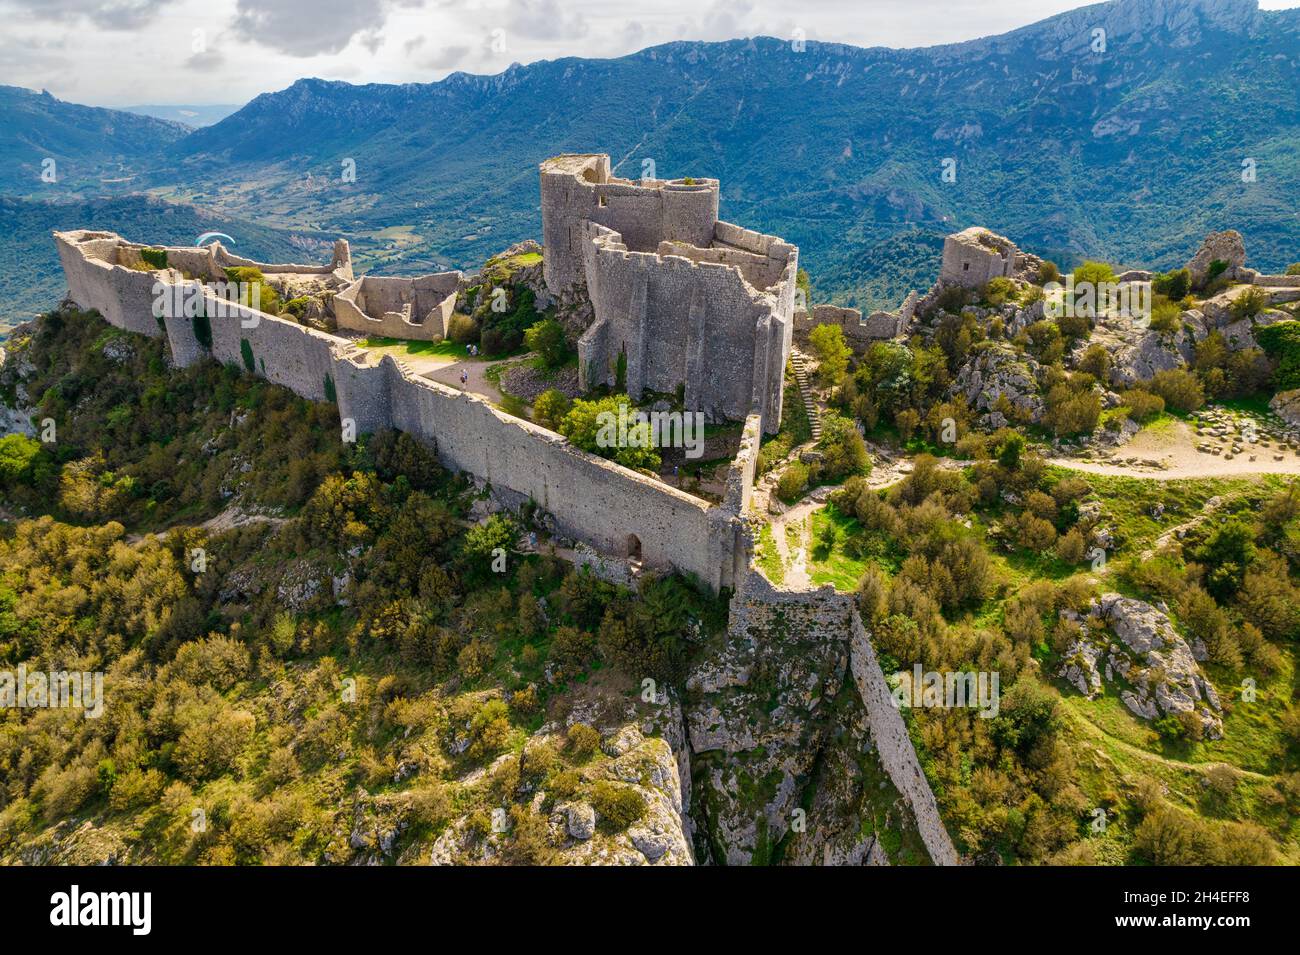 Scatto aereo del castello medievale cataro Peyrepertuse nel sud della Francia Foto Stock